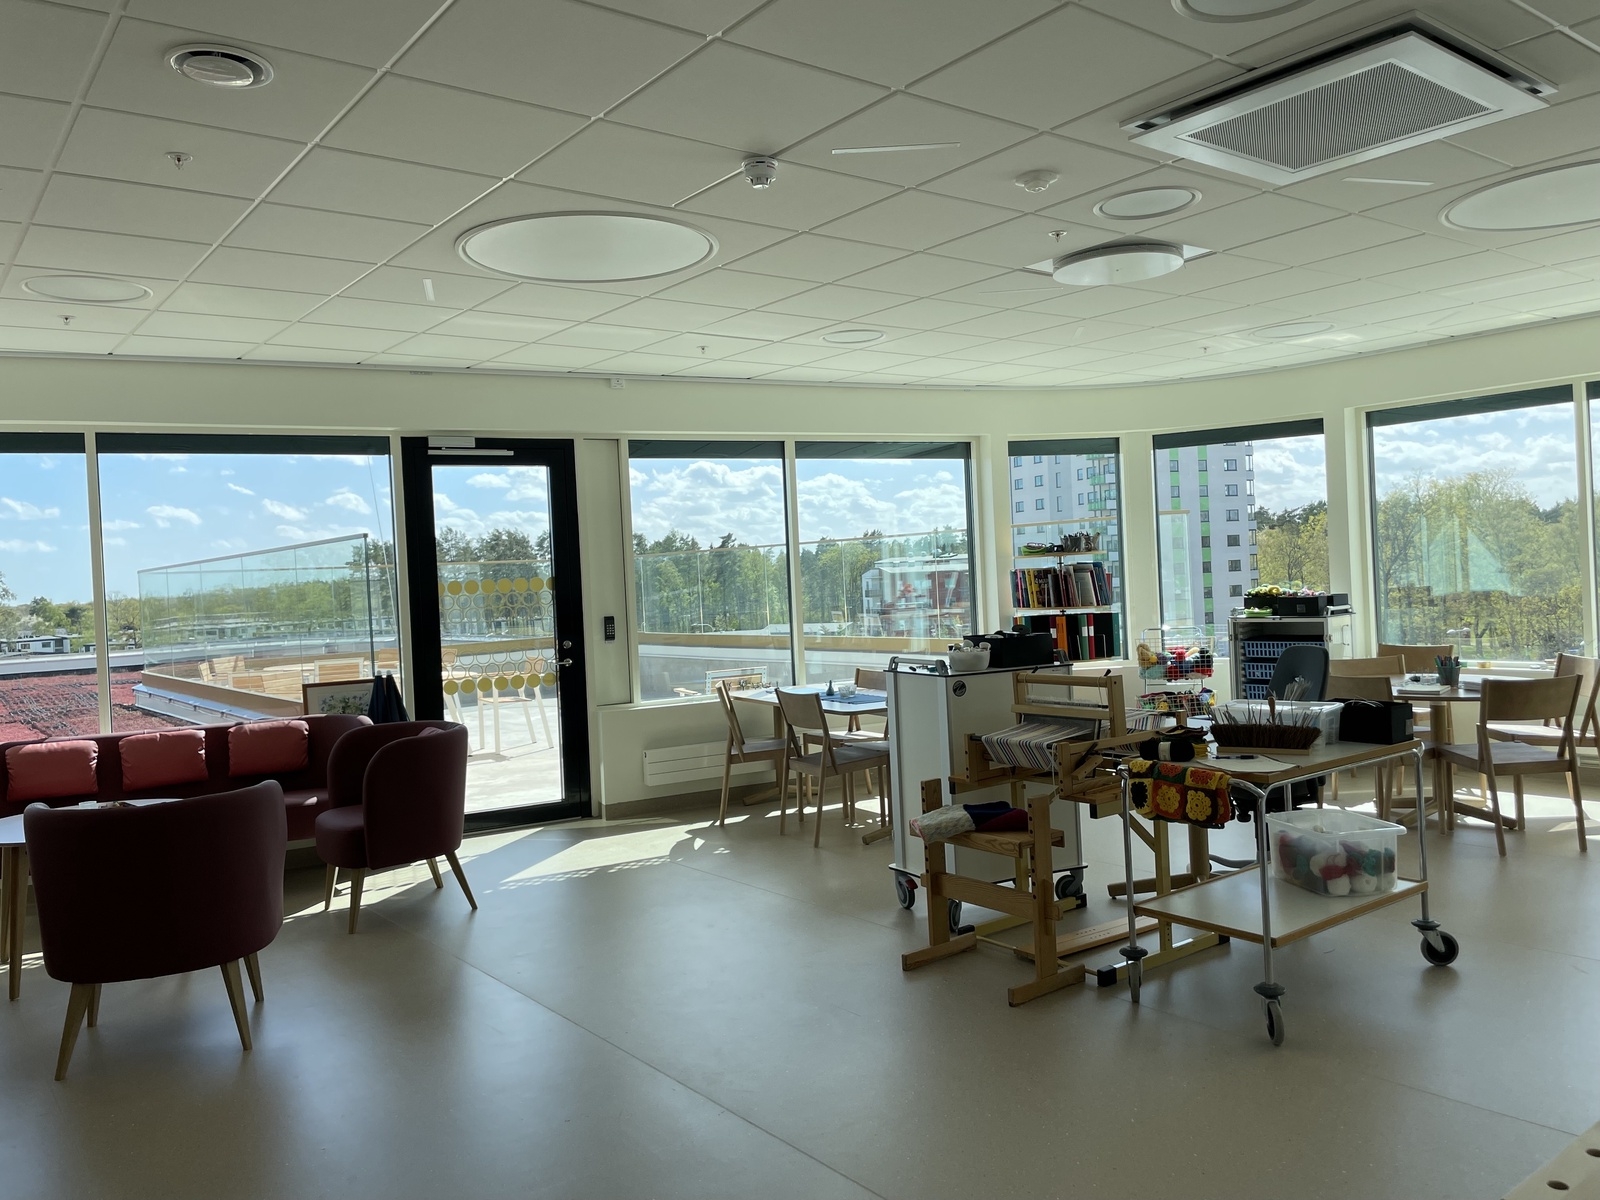 Invigning av nya psykiatrihuset i Kalmar den 12 maj 2022.